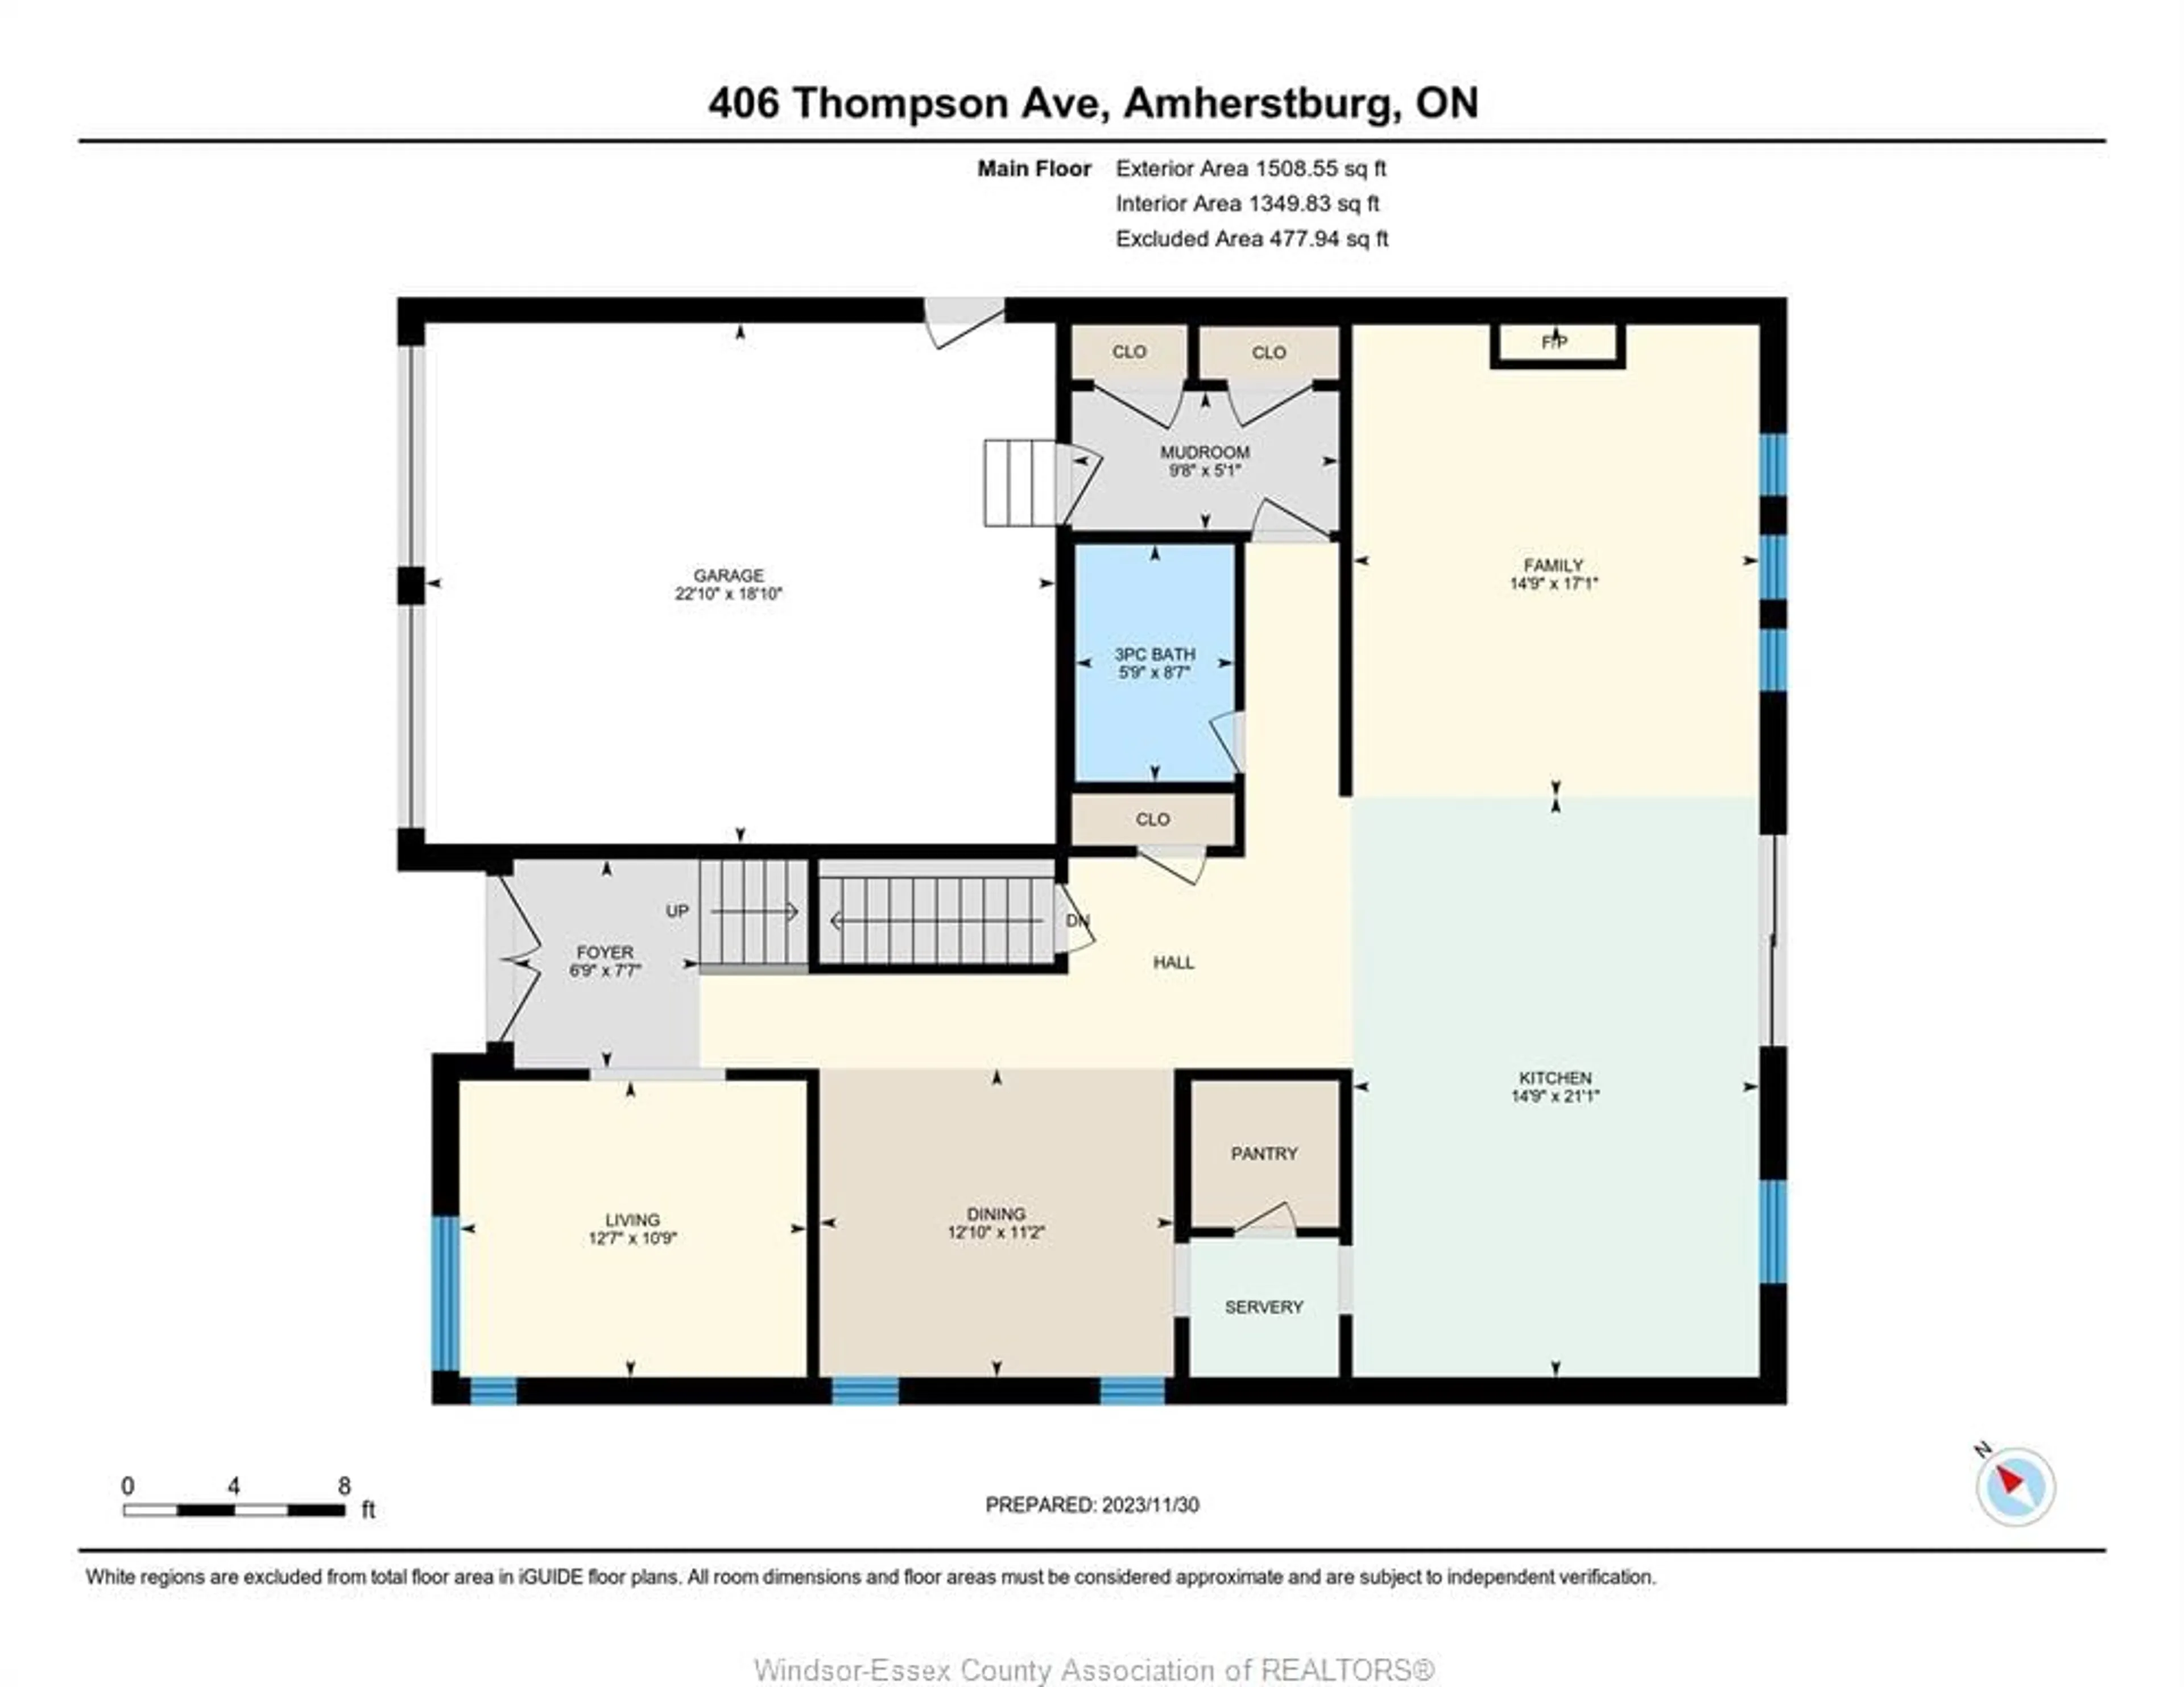 Floor plan for 406 Thompson, Amherstburg Ontario N9V 4B6